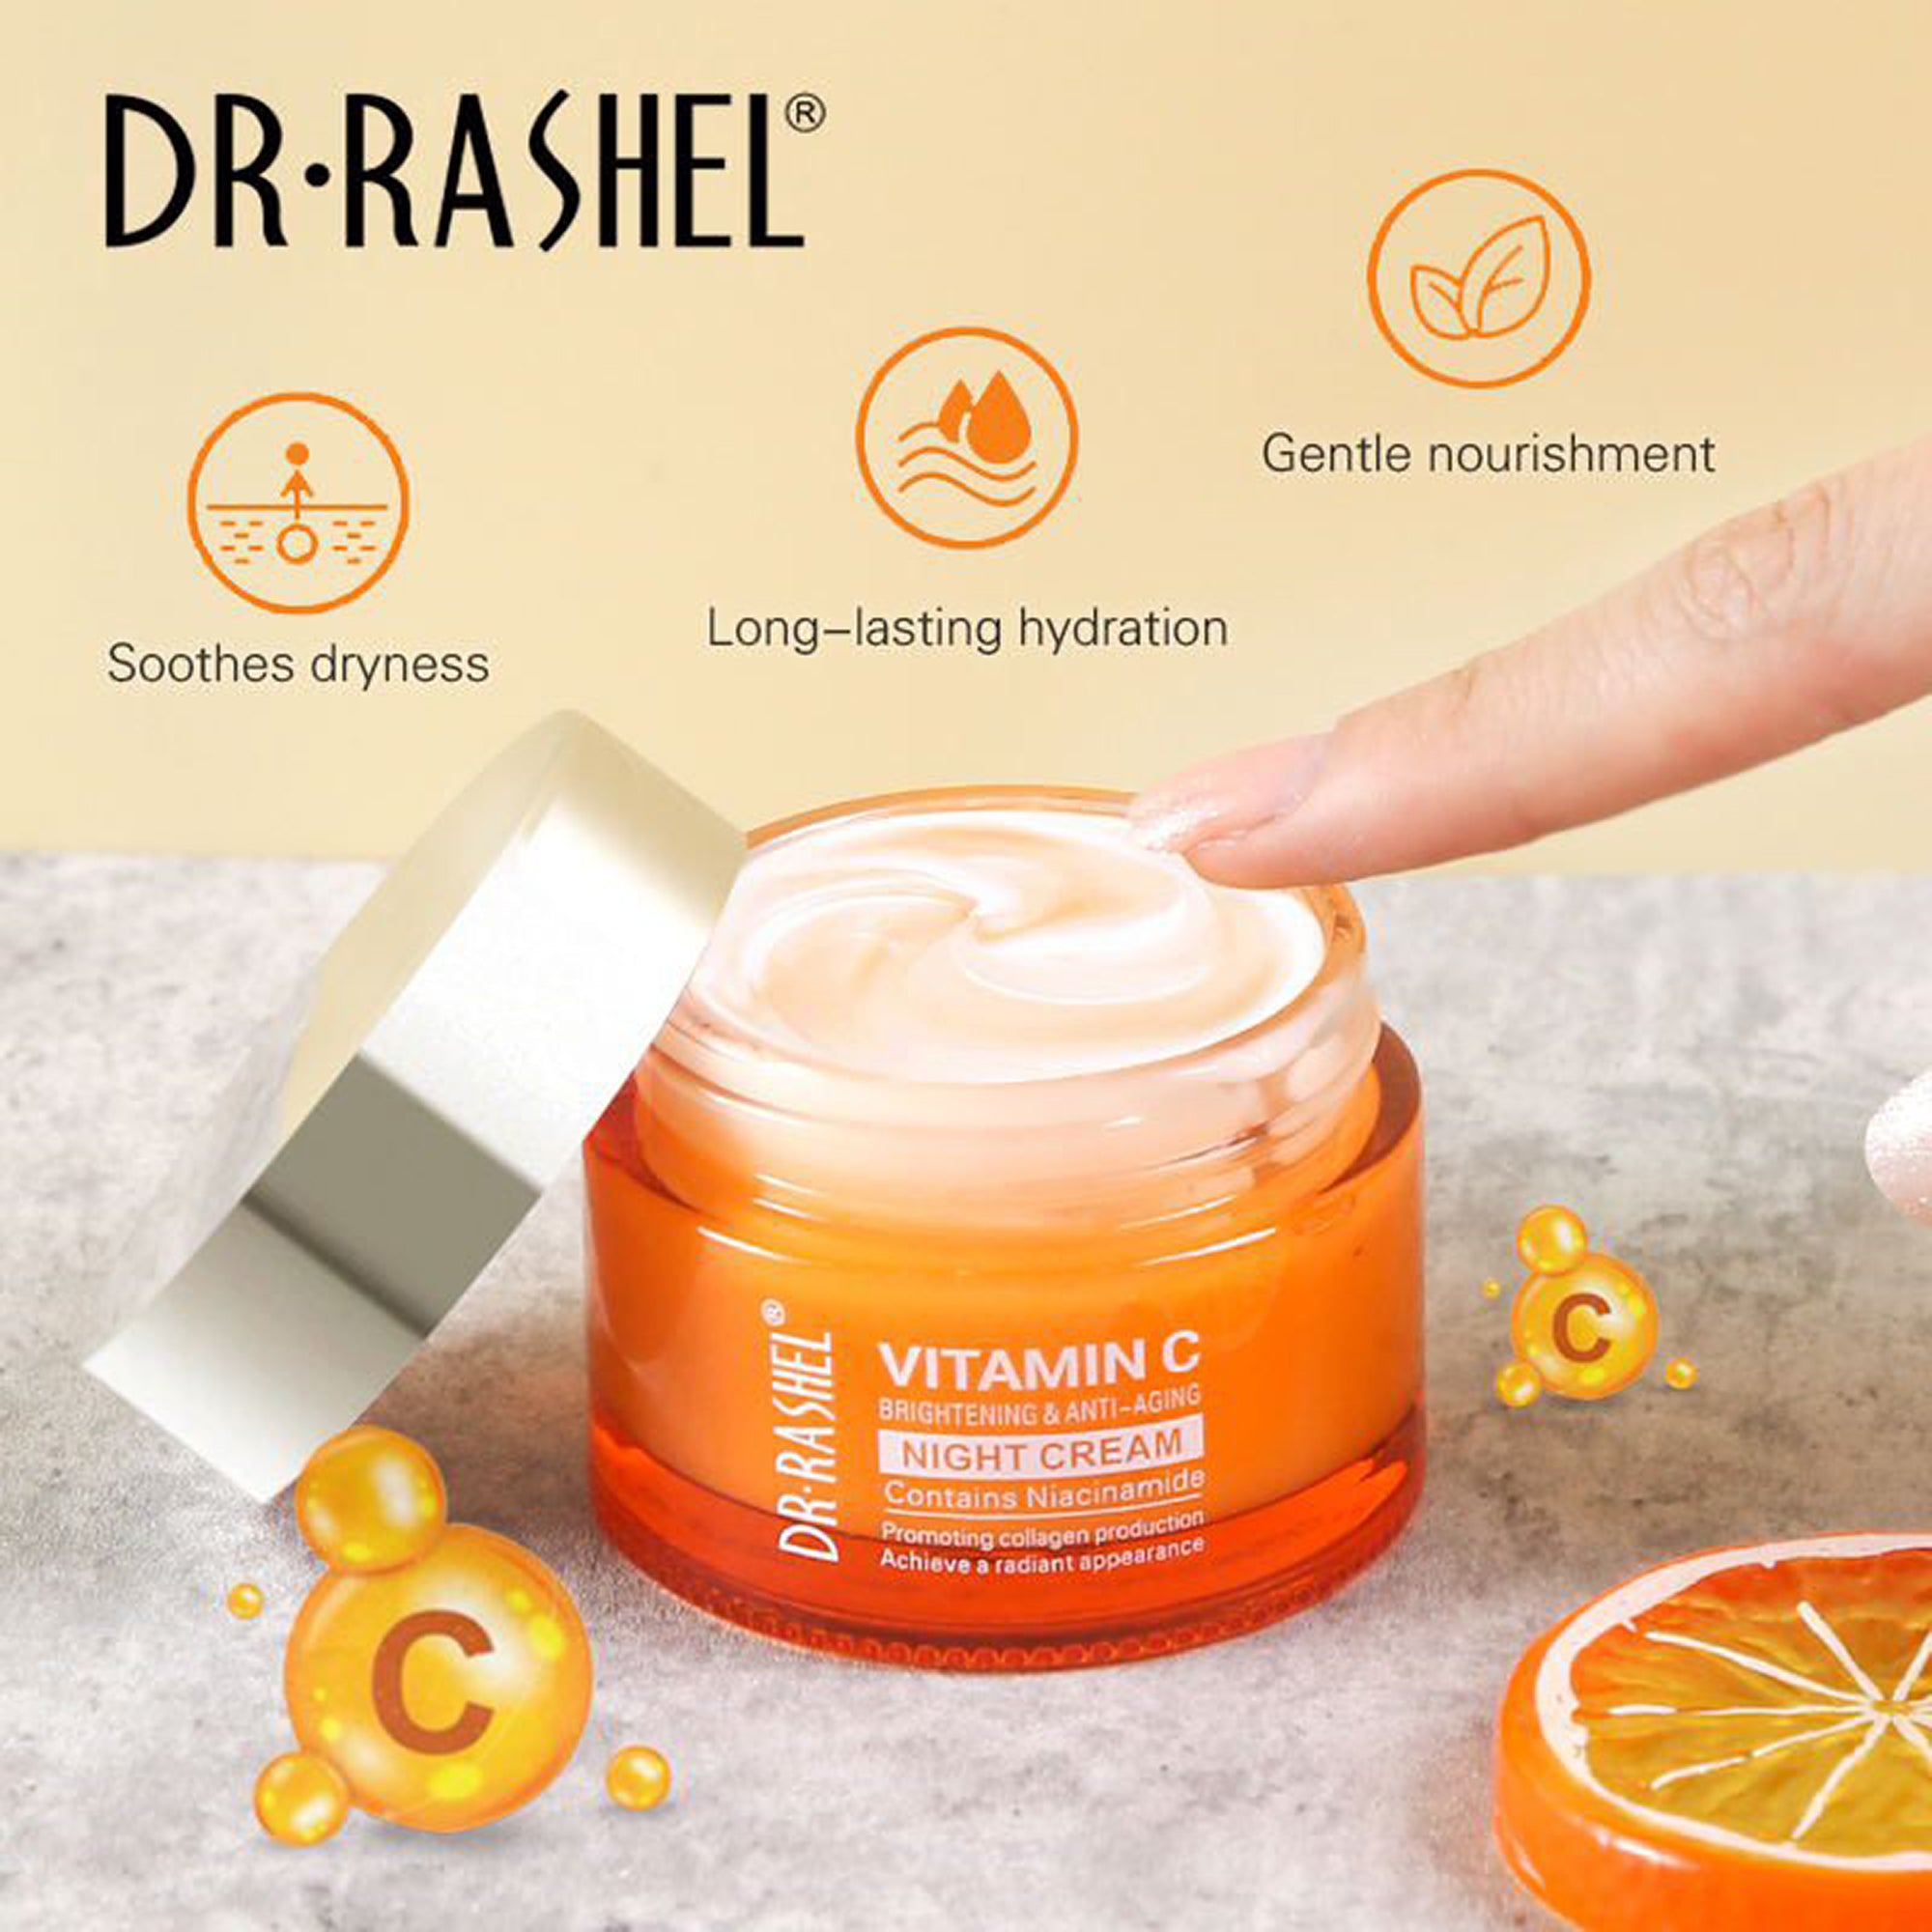 Dr-Rashel Vitamin C Anti-Aging and Brightening Night Cream